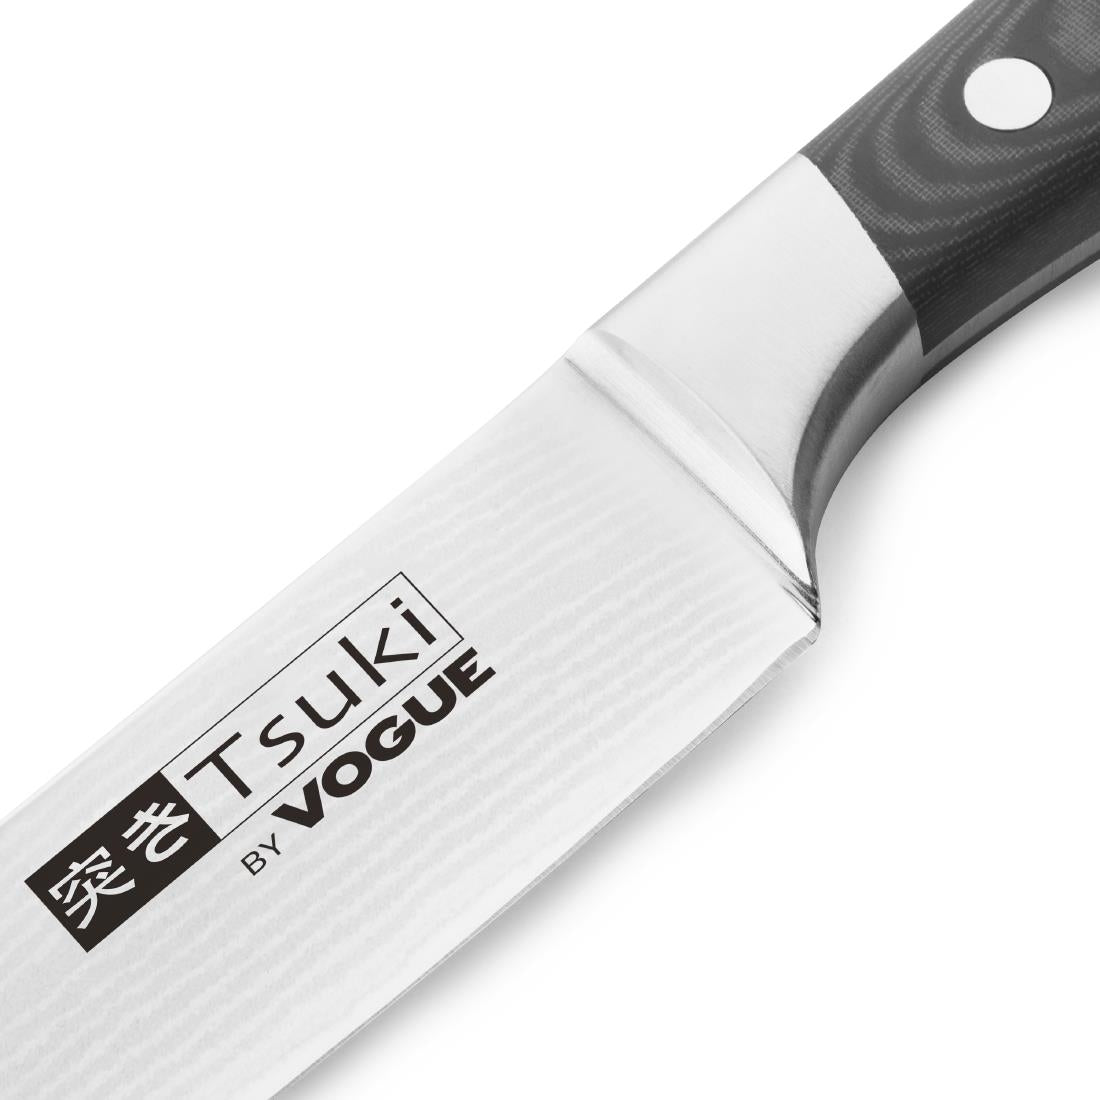 Tsuki Series 7 Carving Knife 20.5cm